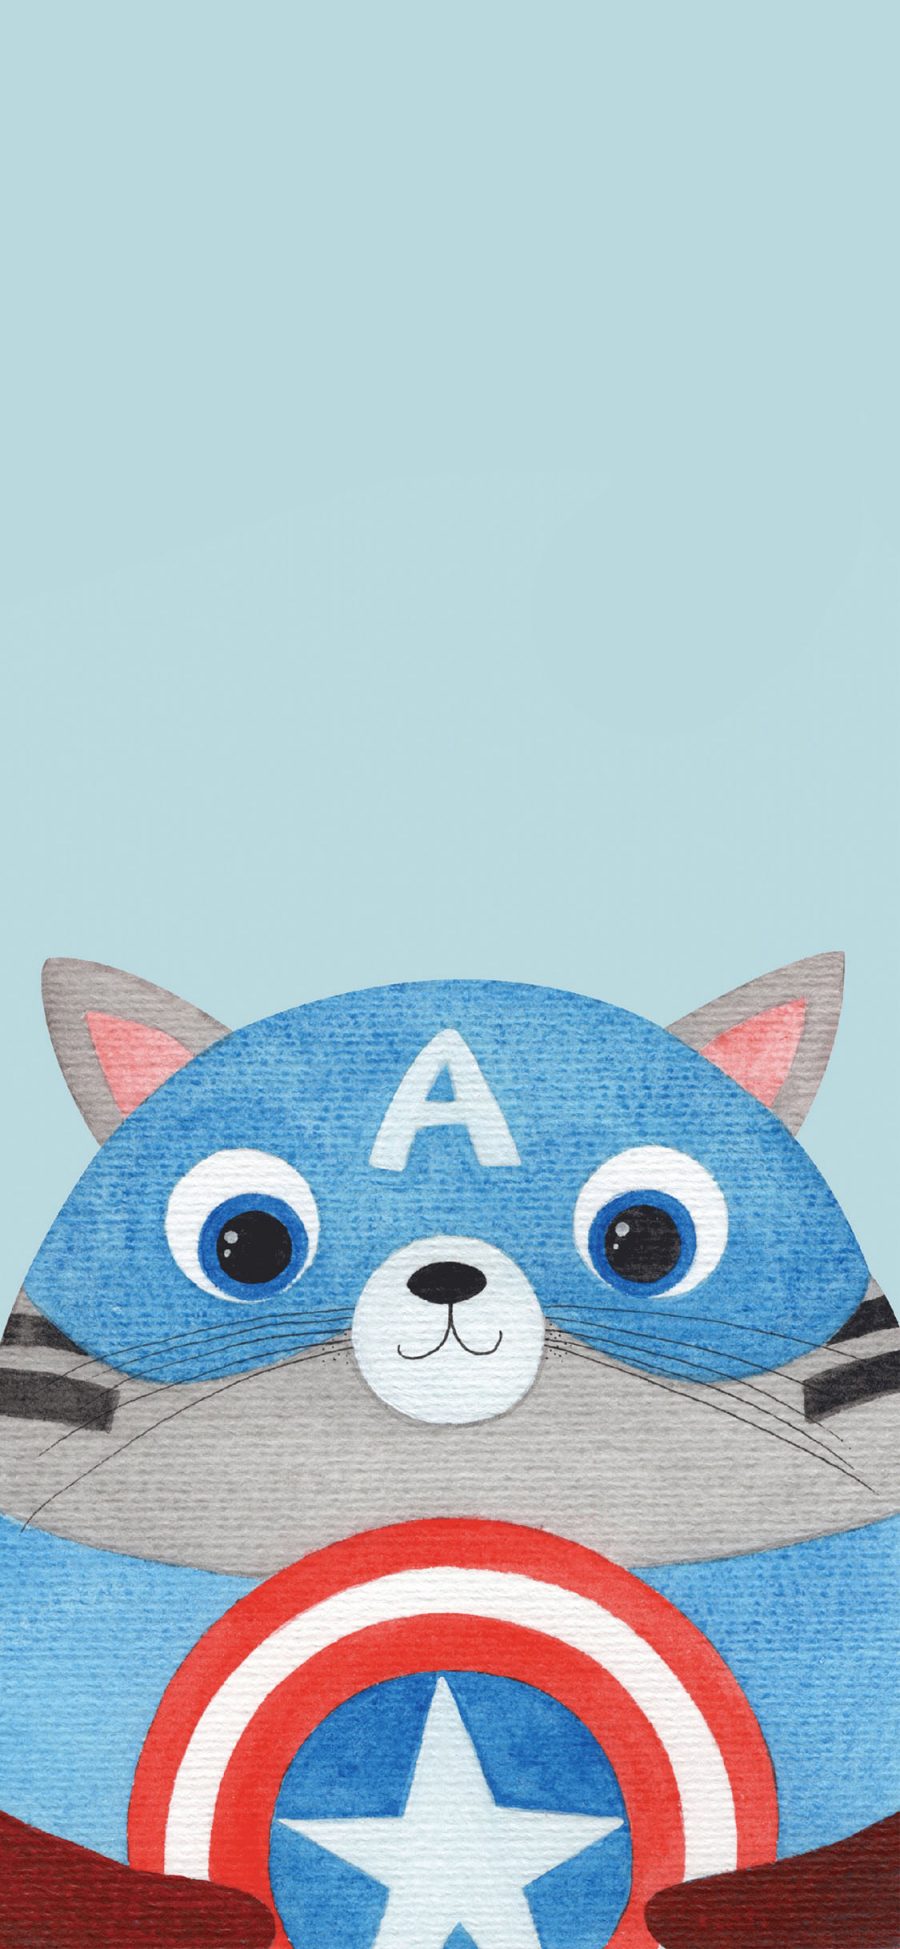 [2436×1125]猫咪 cos 漫威 美国队长 苹果手机动漫壁纸图片